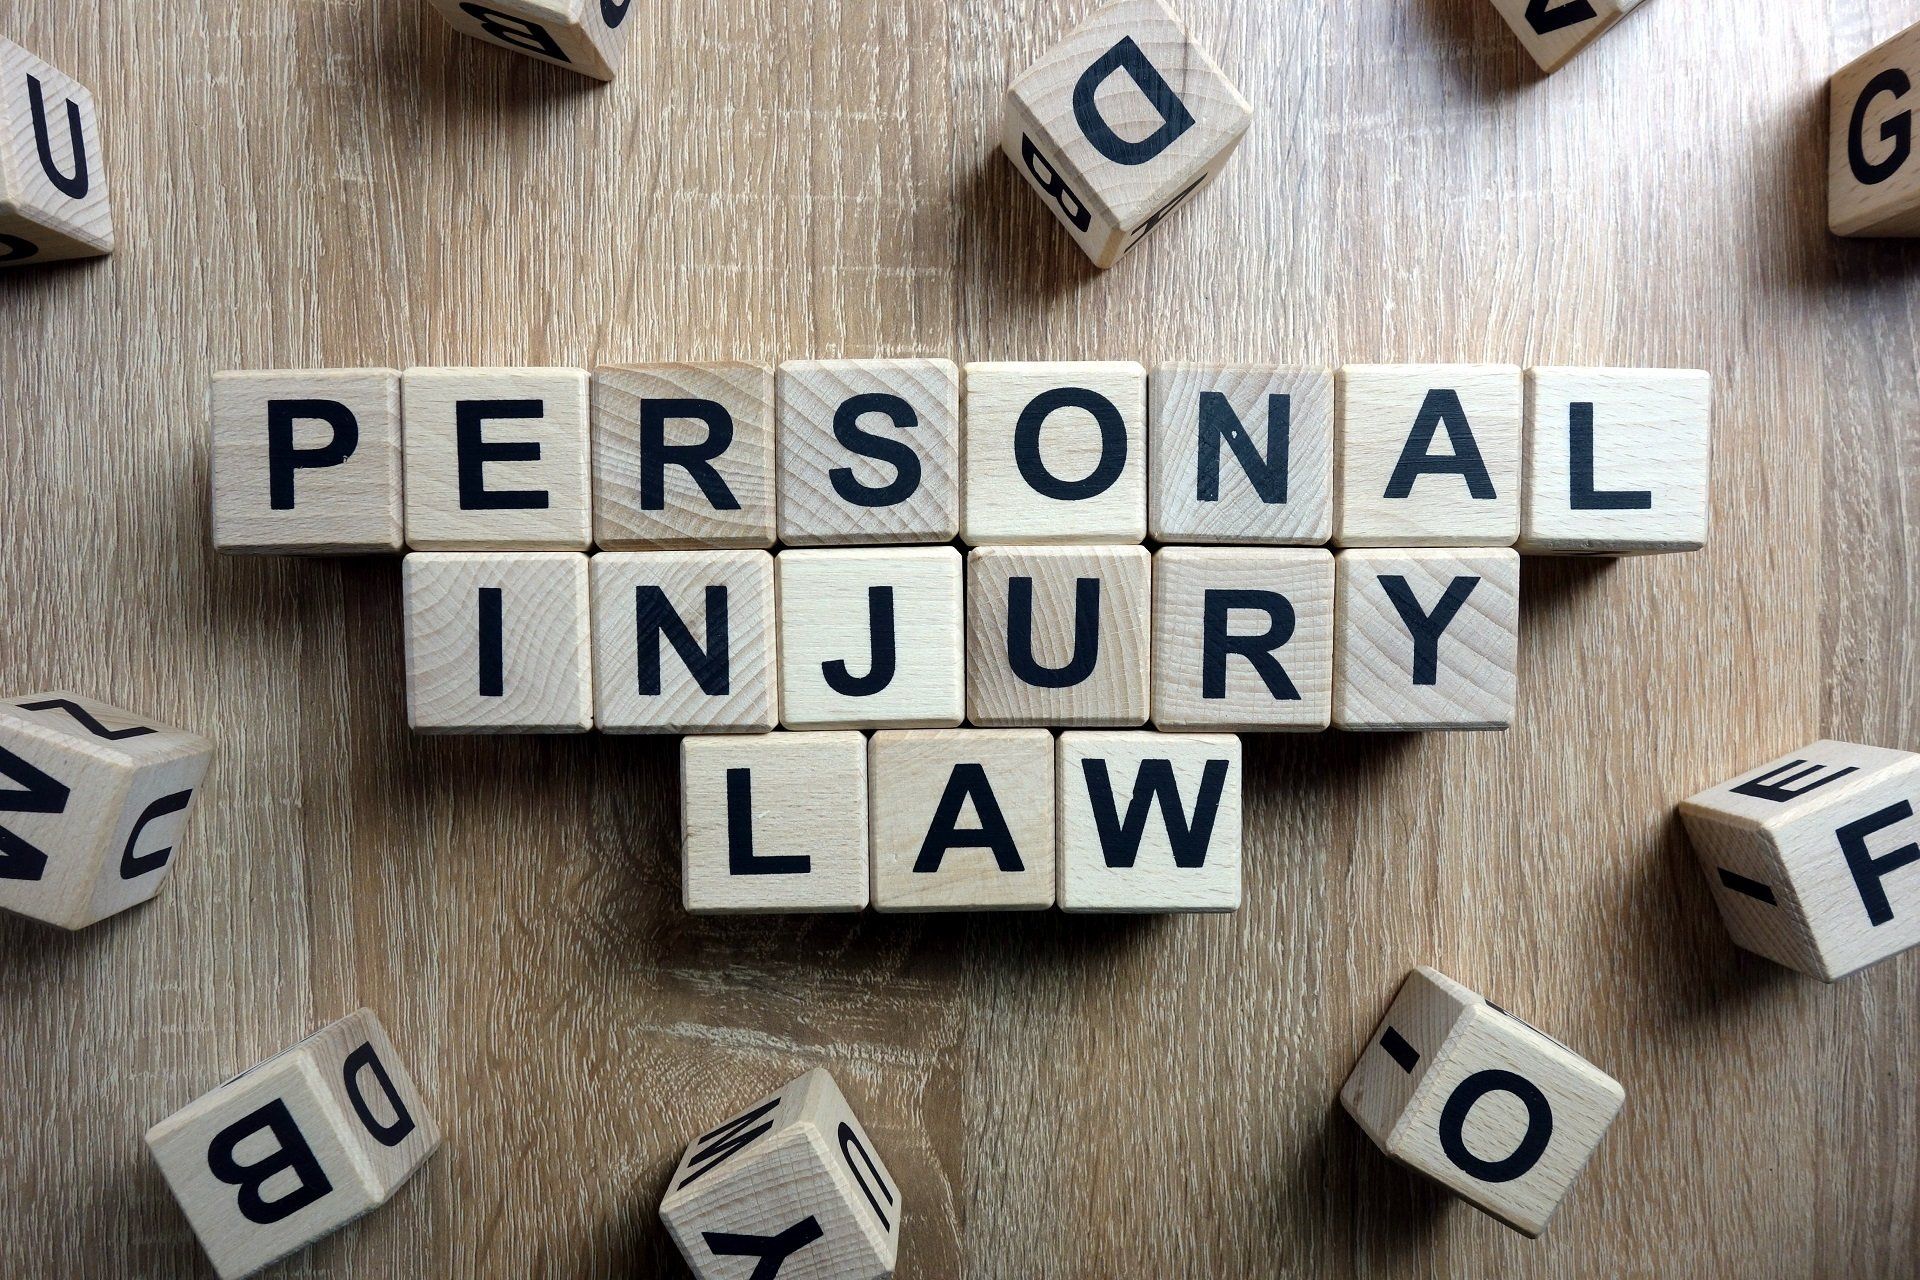 Personal injury lawyer marketing